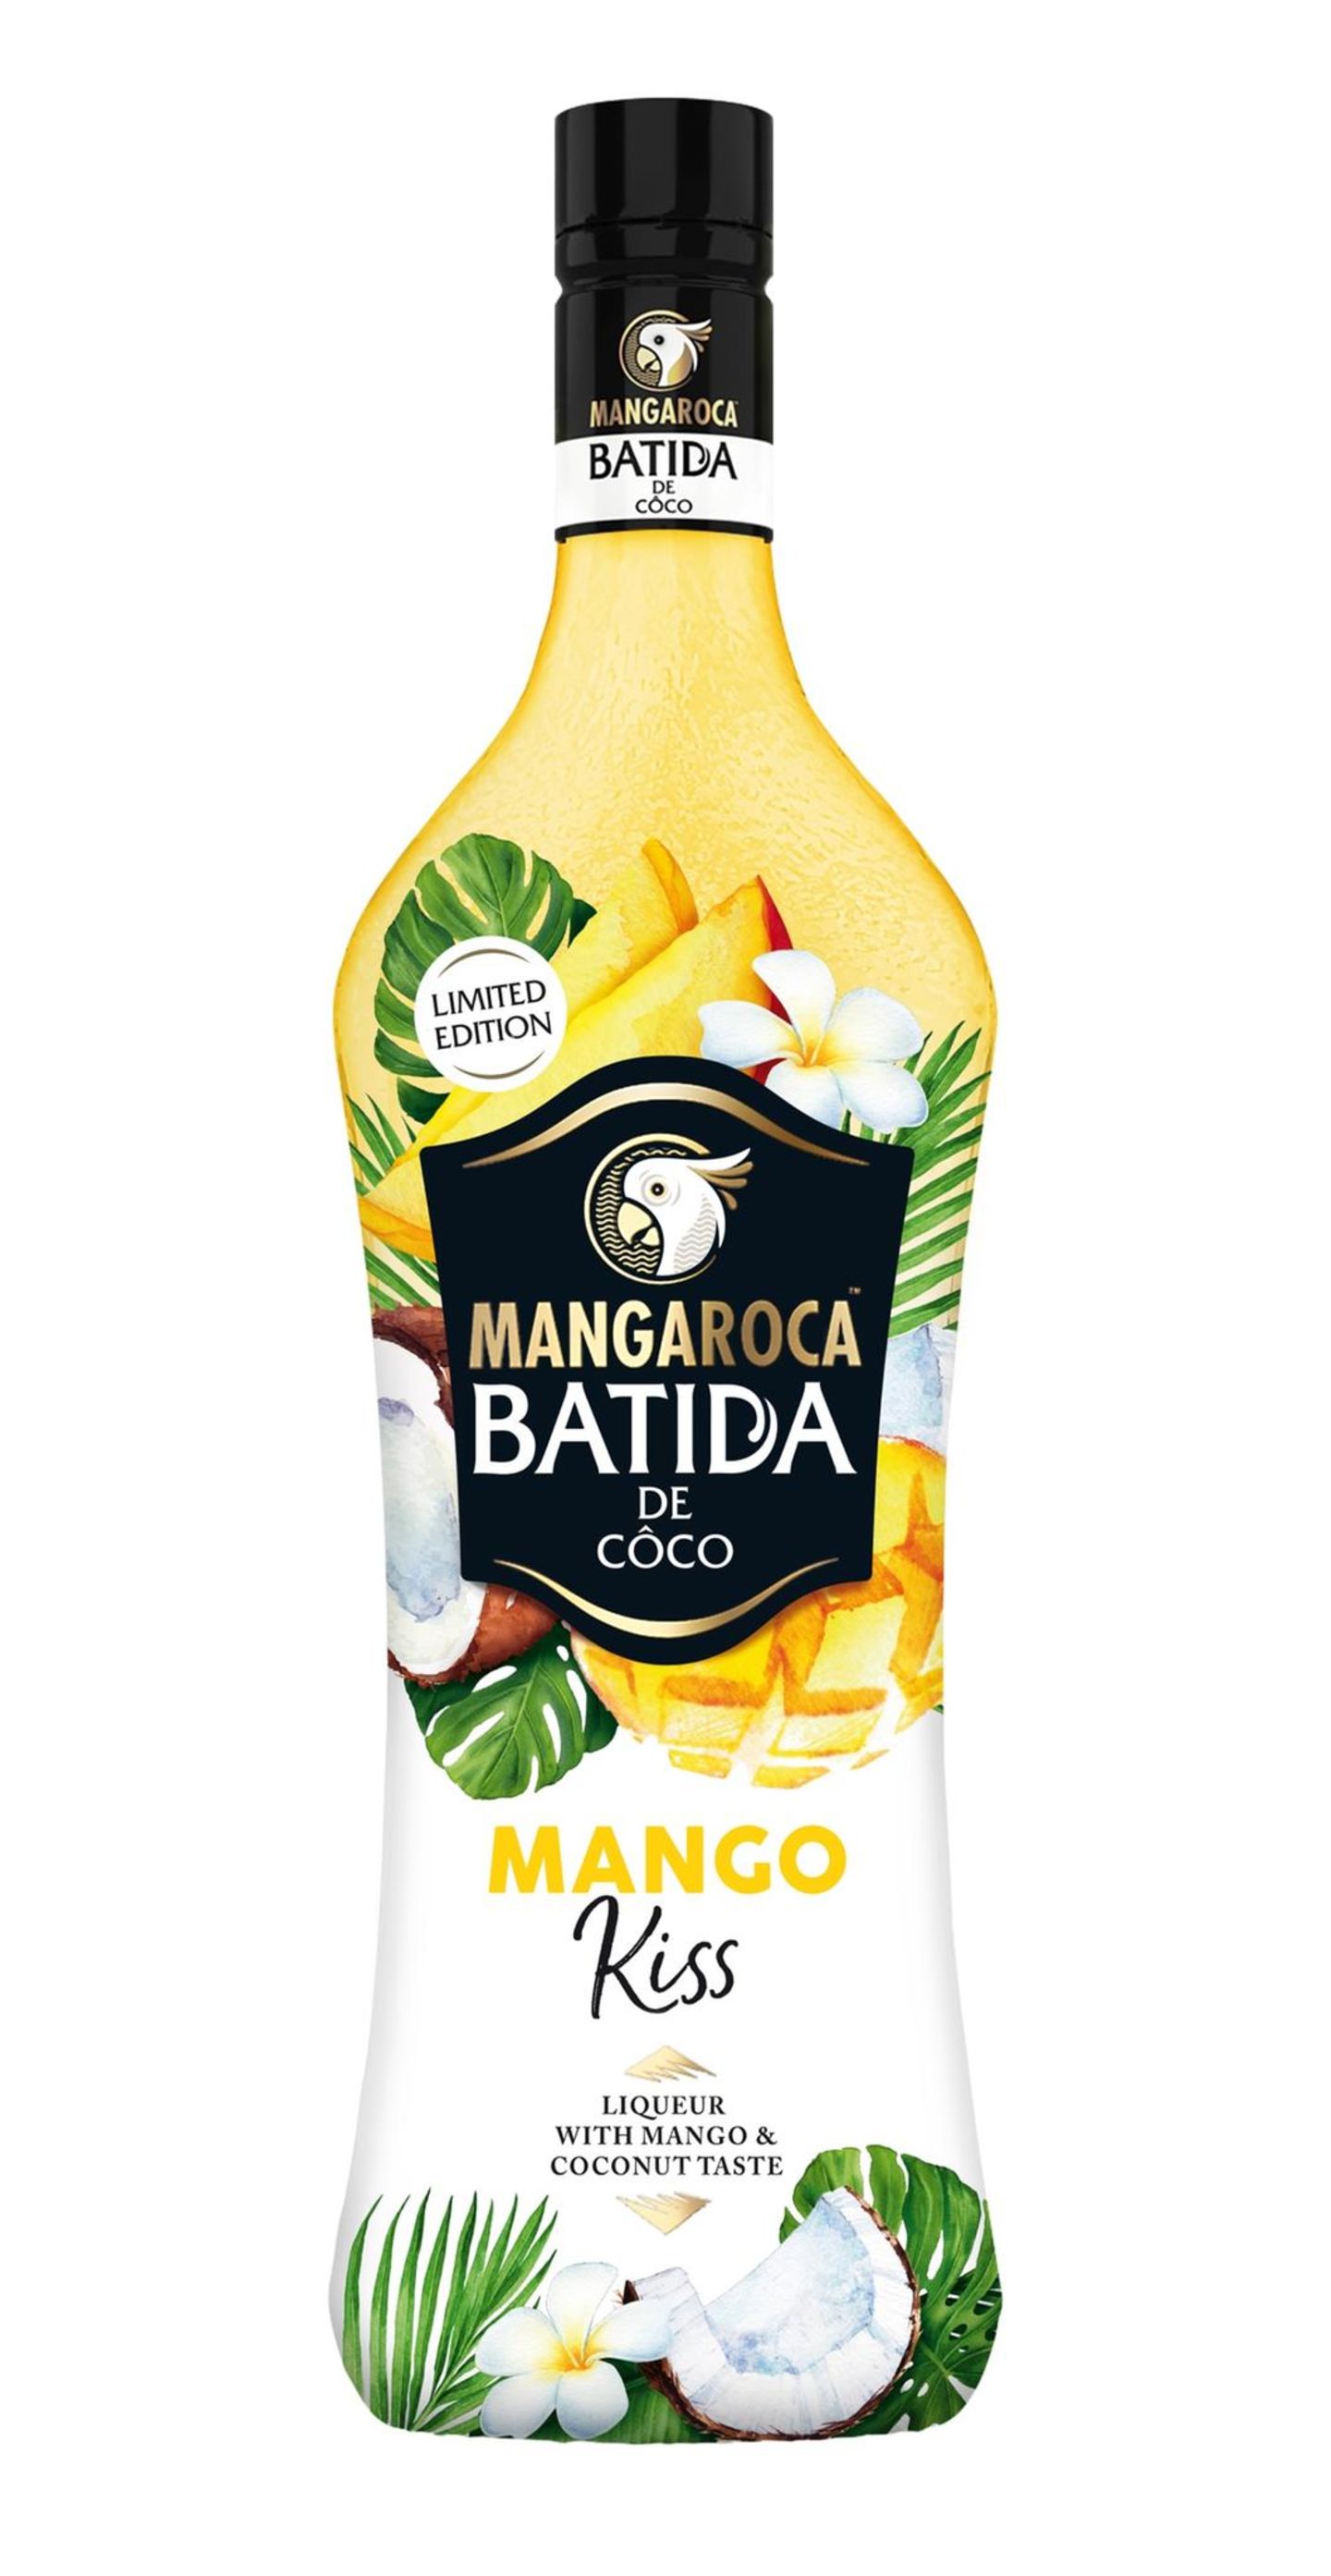 Die limited Edition Mangaroca Batida Mango Kiss ist zurück und sorgt für Sommerfeeling im Glas. Ob pur auf Eis oder im tropischen Cocktail – fruchtig-frischer Genuss ist garantiert. Auch zum Verfeinern von Kuchen und Desserts überzeugt die Mischung aus cremigem Kokoslikör und süßer Mango – ein echter Geheimtipp! Der Trend-Likör in der dekorativen 0,7-Liter-Flasche enthält 16 Prozent Alkohol und kostet 9,99 Euro UVP.